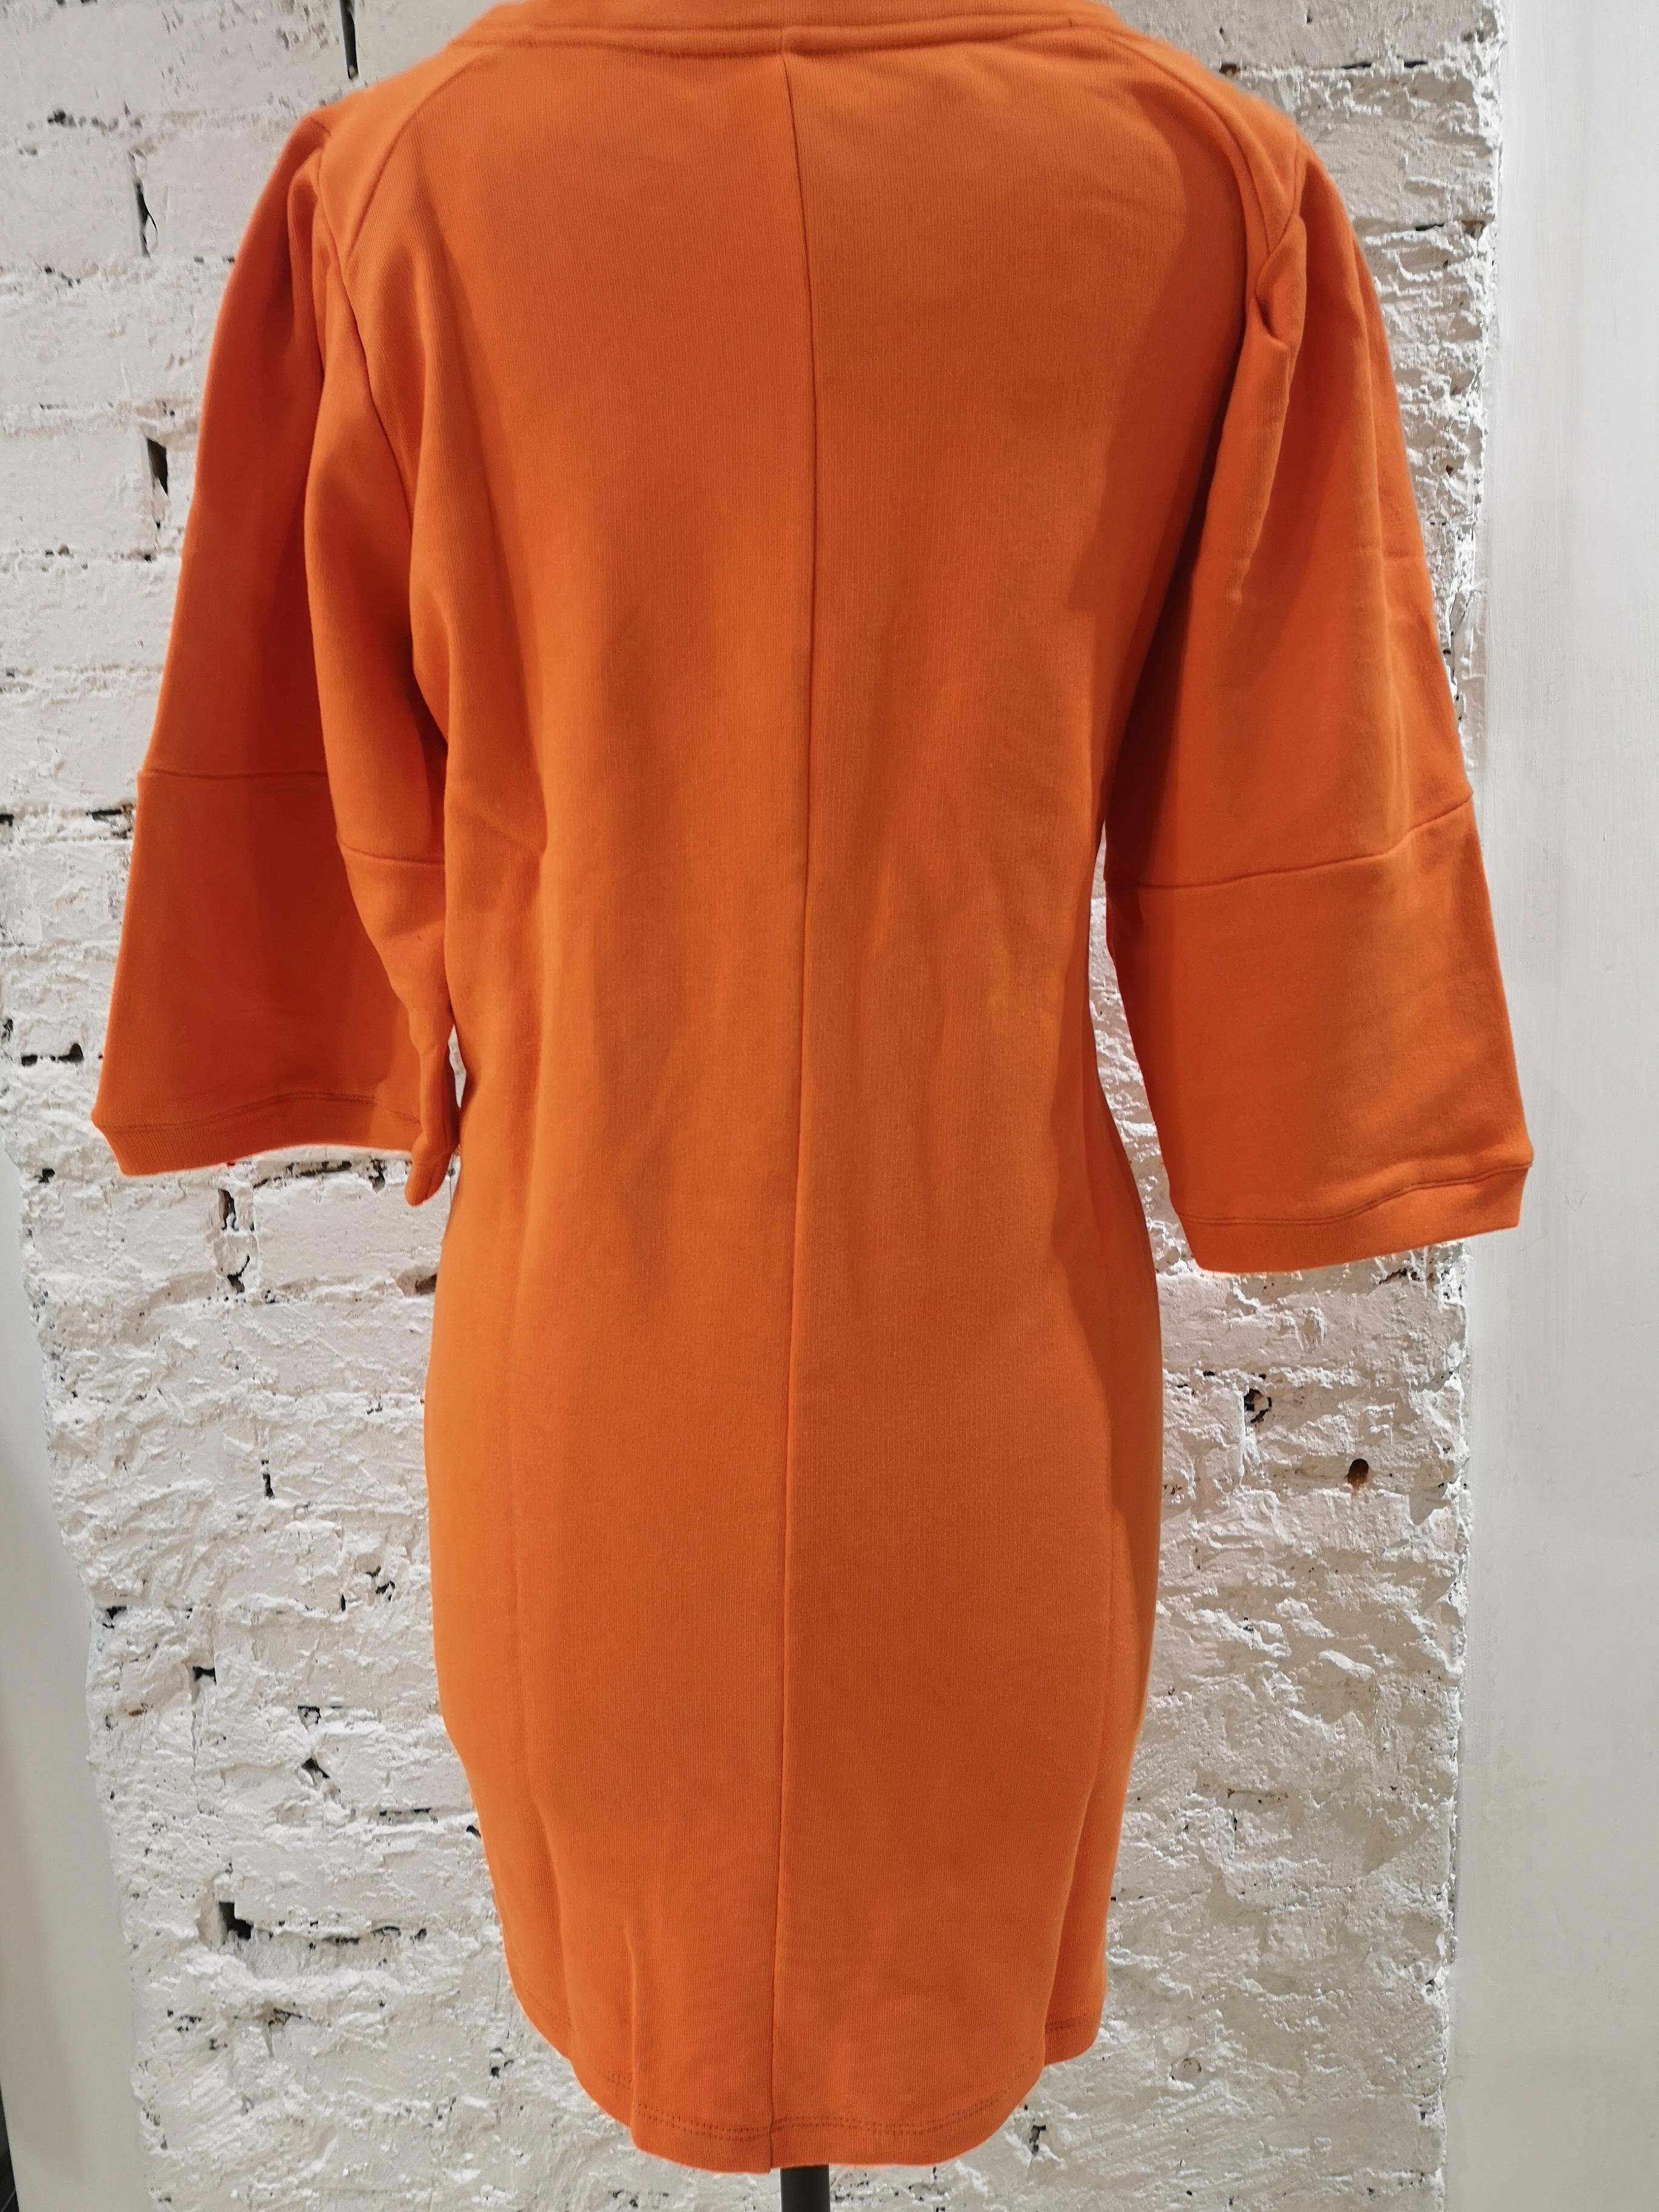 Women's or Men's Gli Psicopatici orange long dress / sweater